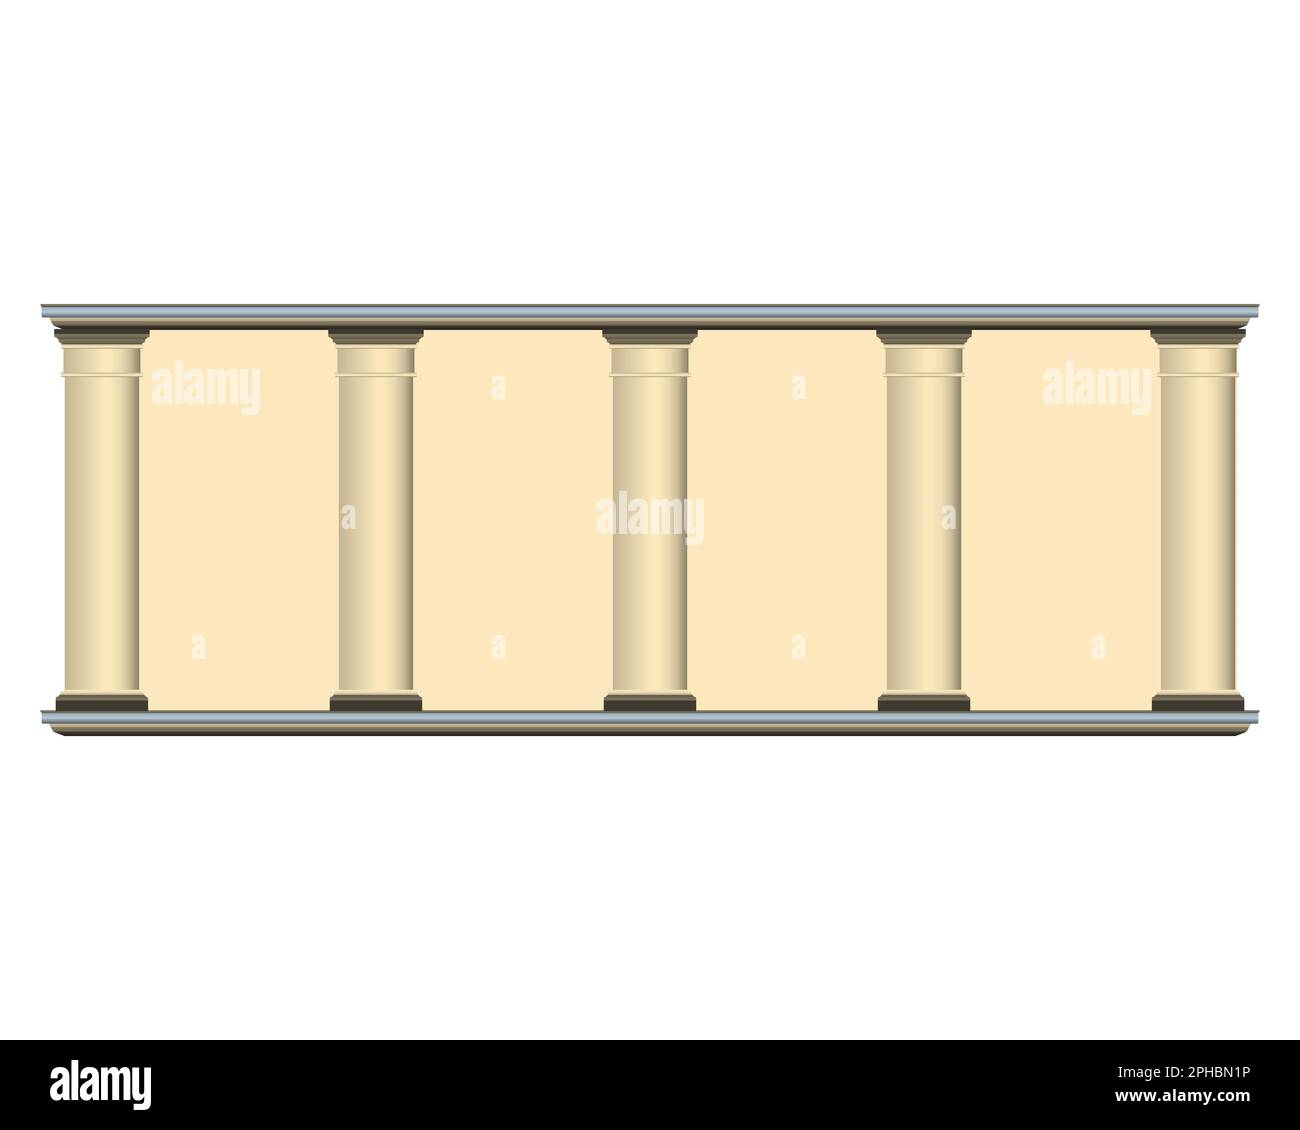 Mur de colonnes beige de style réaliste. Ancienne façade de bâtiment. Illustration vectorielle colorée isolée sur fond blanc. Illustration de Vecteur